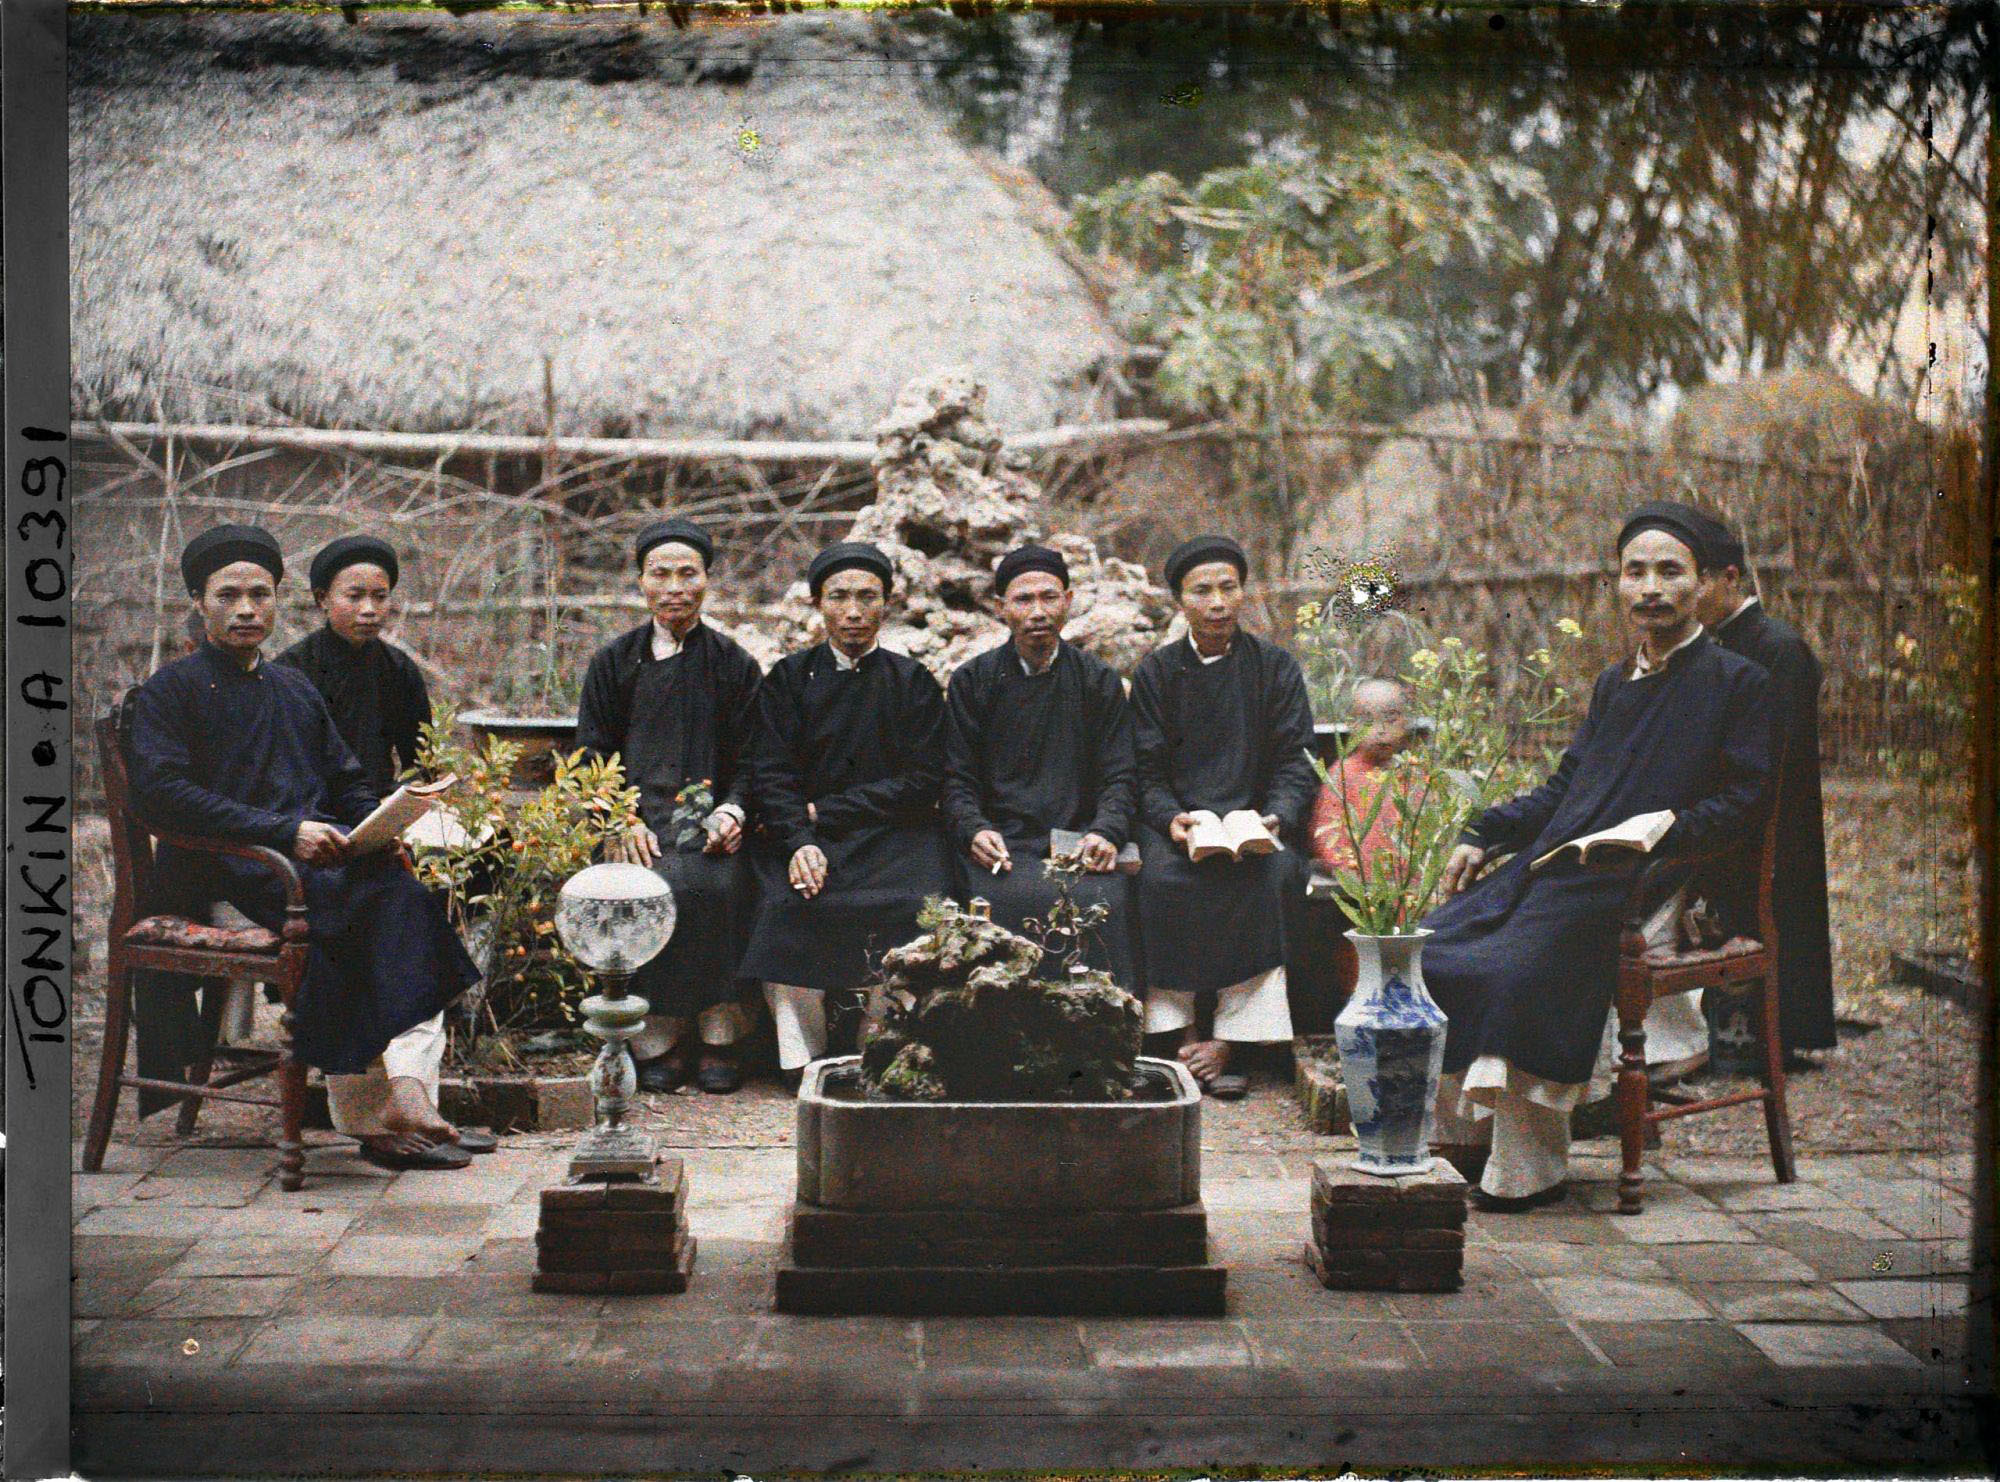 Một nhóm hương chức ngồi trong một sân nhà ở miền Bắc Việt Nam. Sân vườn bài trí chậu quất, bình hoa, gợi không khí về phong quang mời khách ngâm thơ trong vườn nhà trong thơ của Trần Phi Khanh